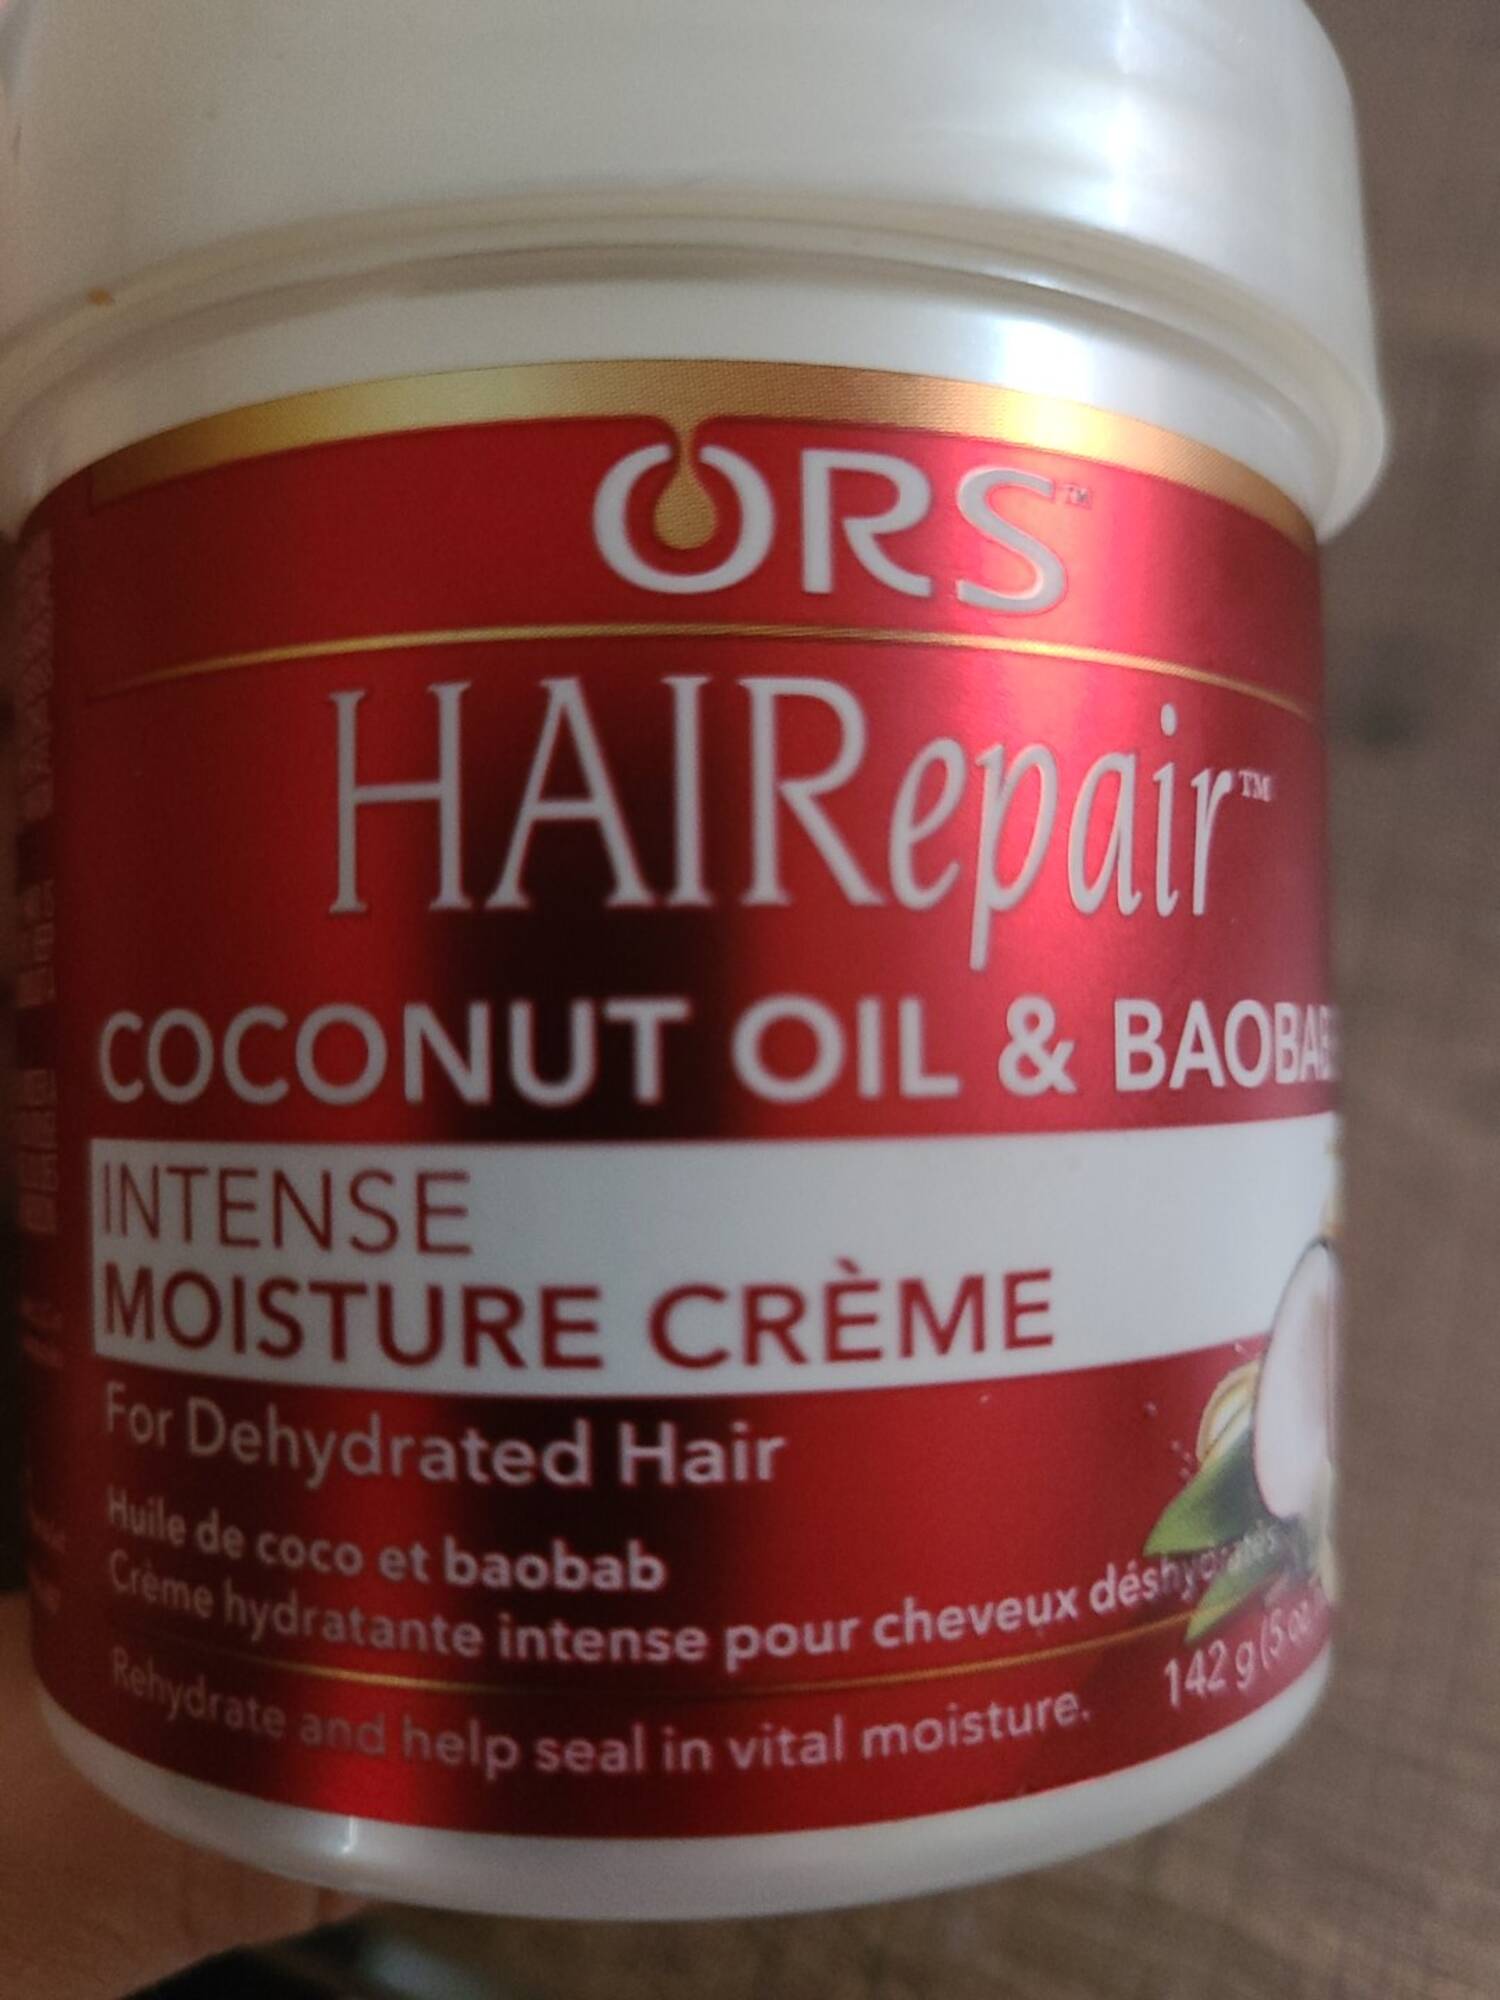 ORS - HAIRepair - Coconut oil & baobab